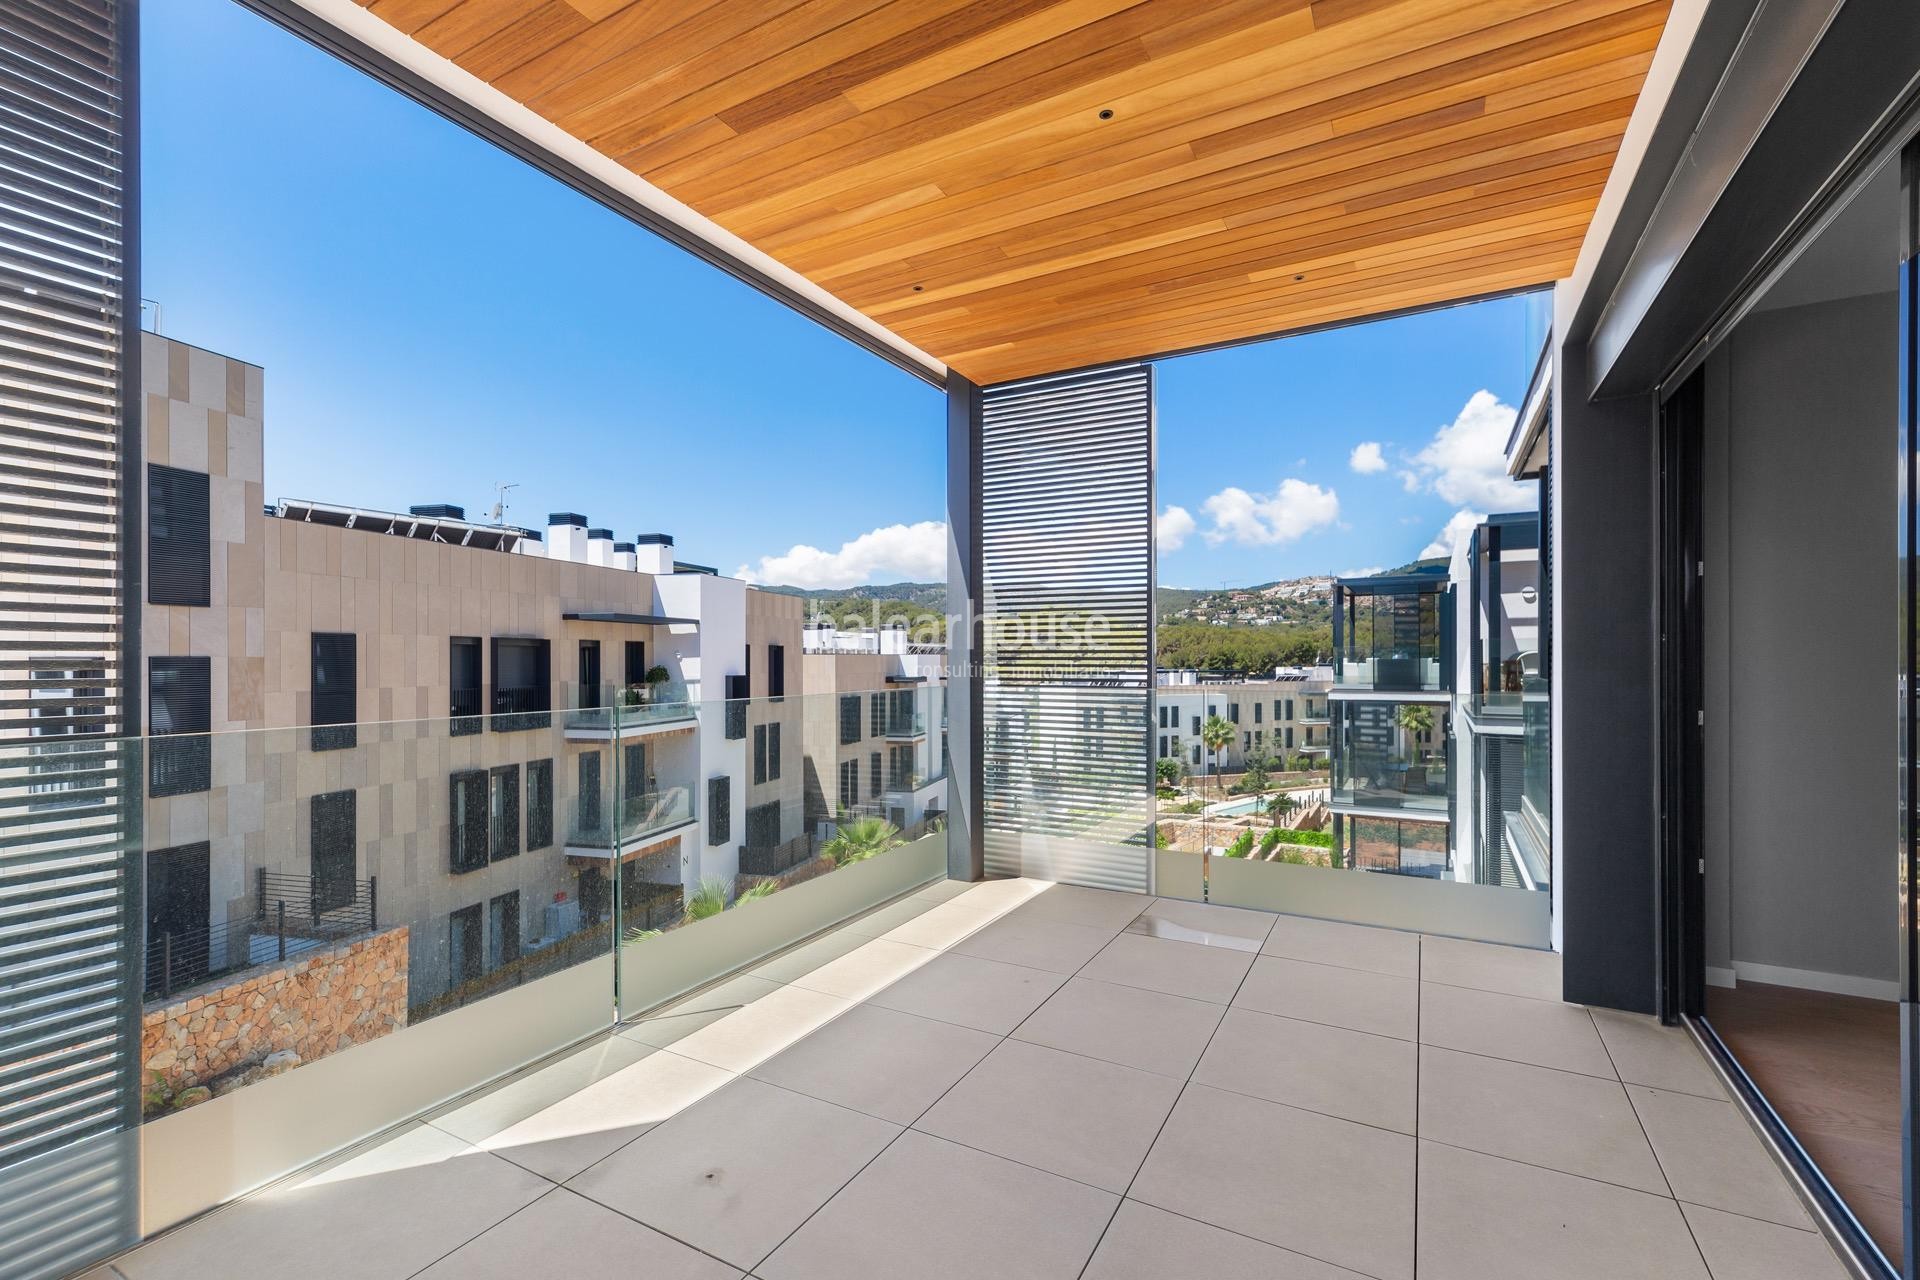 Moderno piso a estrenar en un cuidado complejo frente al golf y vistas despejadas a la montaña